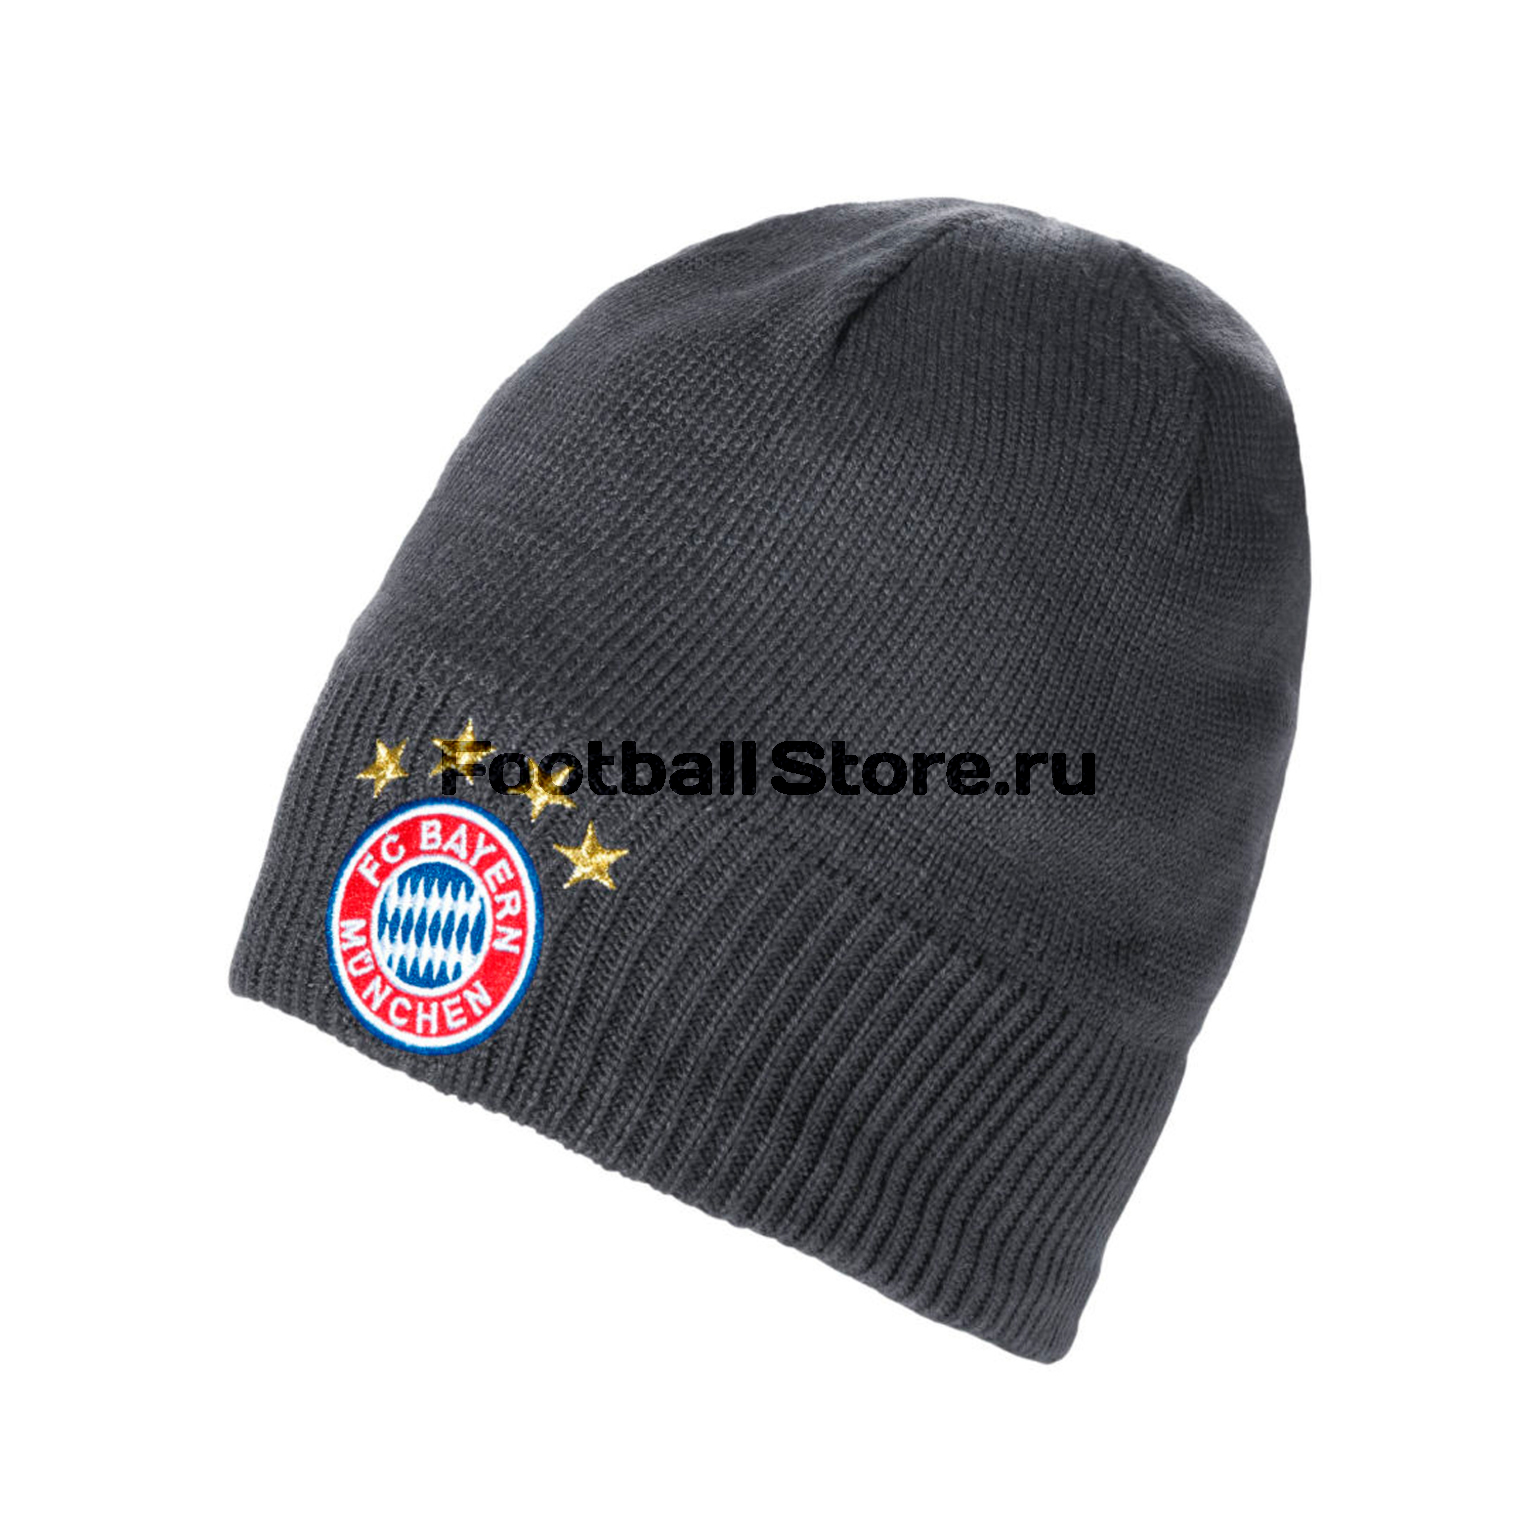 Шапка Adidas FC Bayern Beanie S95122 